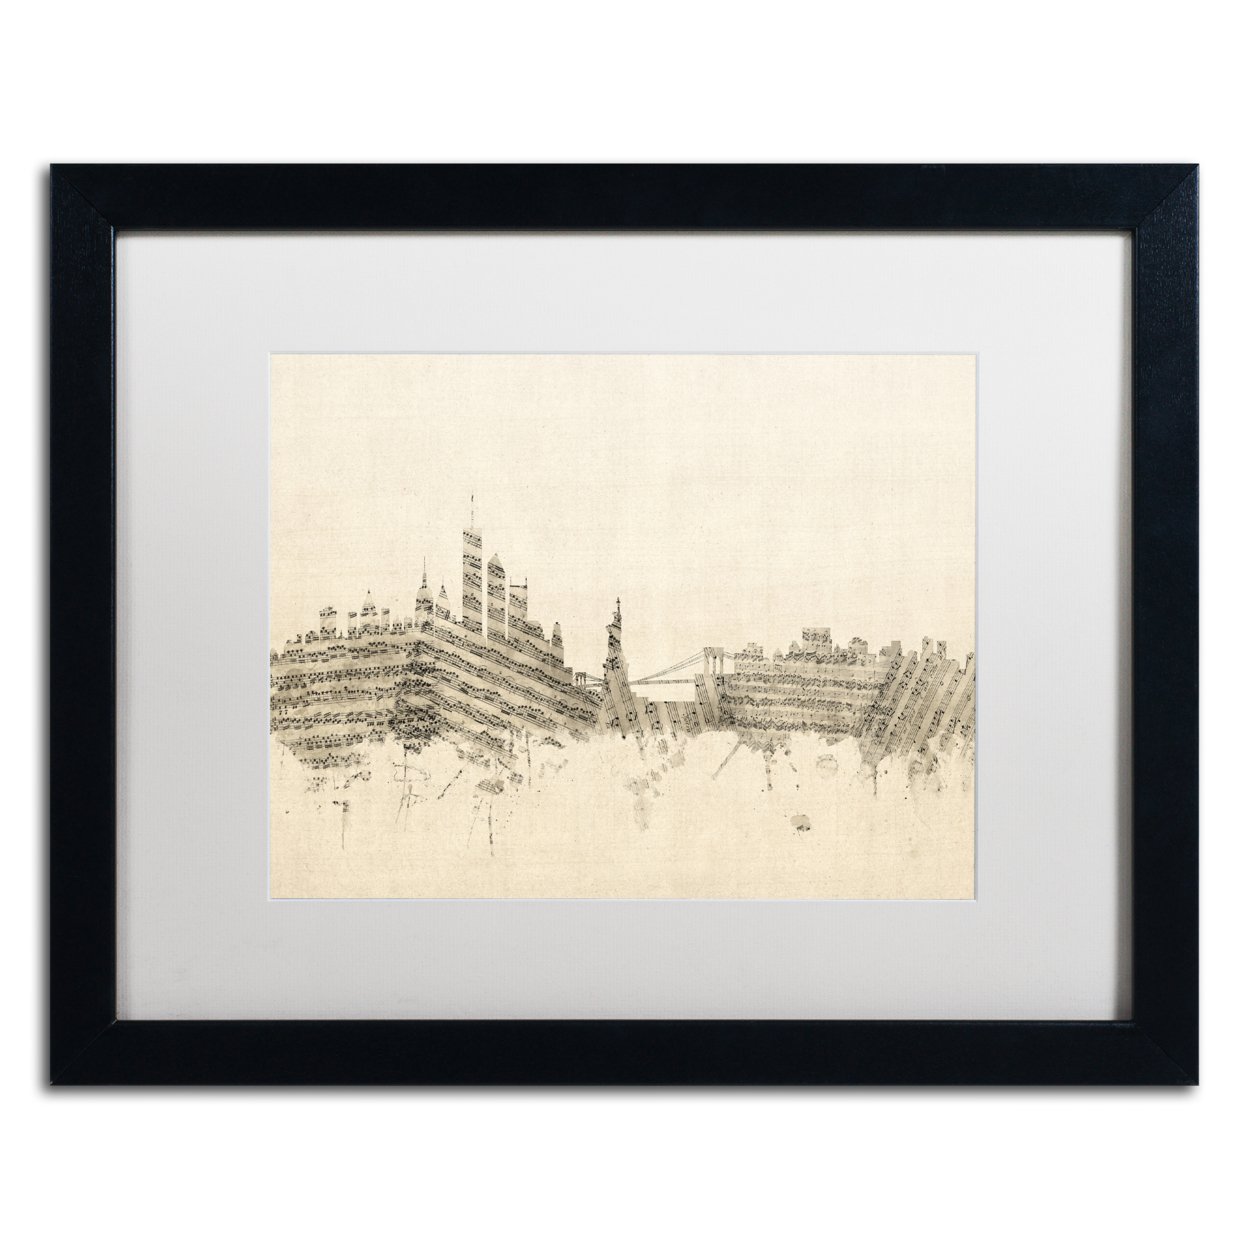 Michael Tompsett 'New York Skyline Sheet Music II' Black Wooden Framed Art 18 X 22 Inches